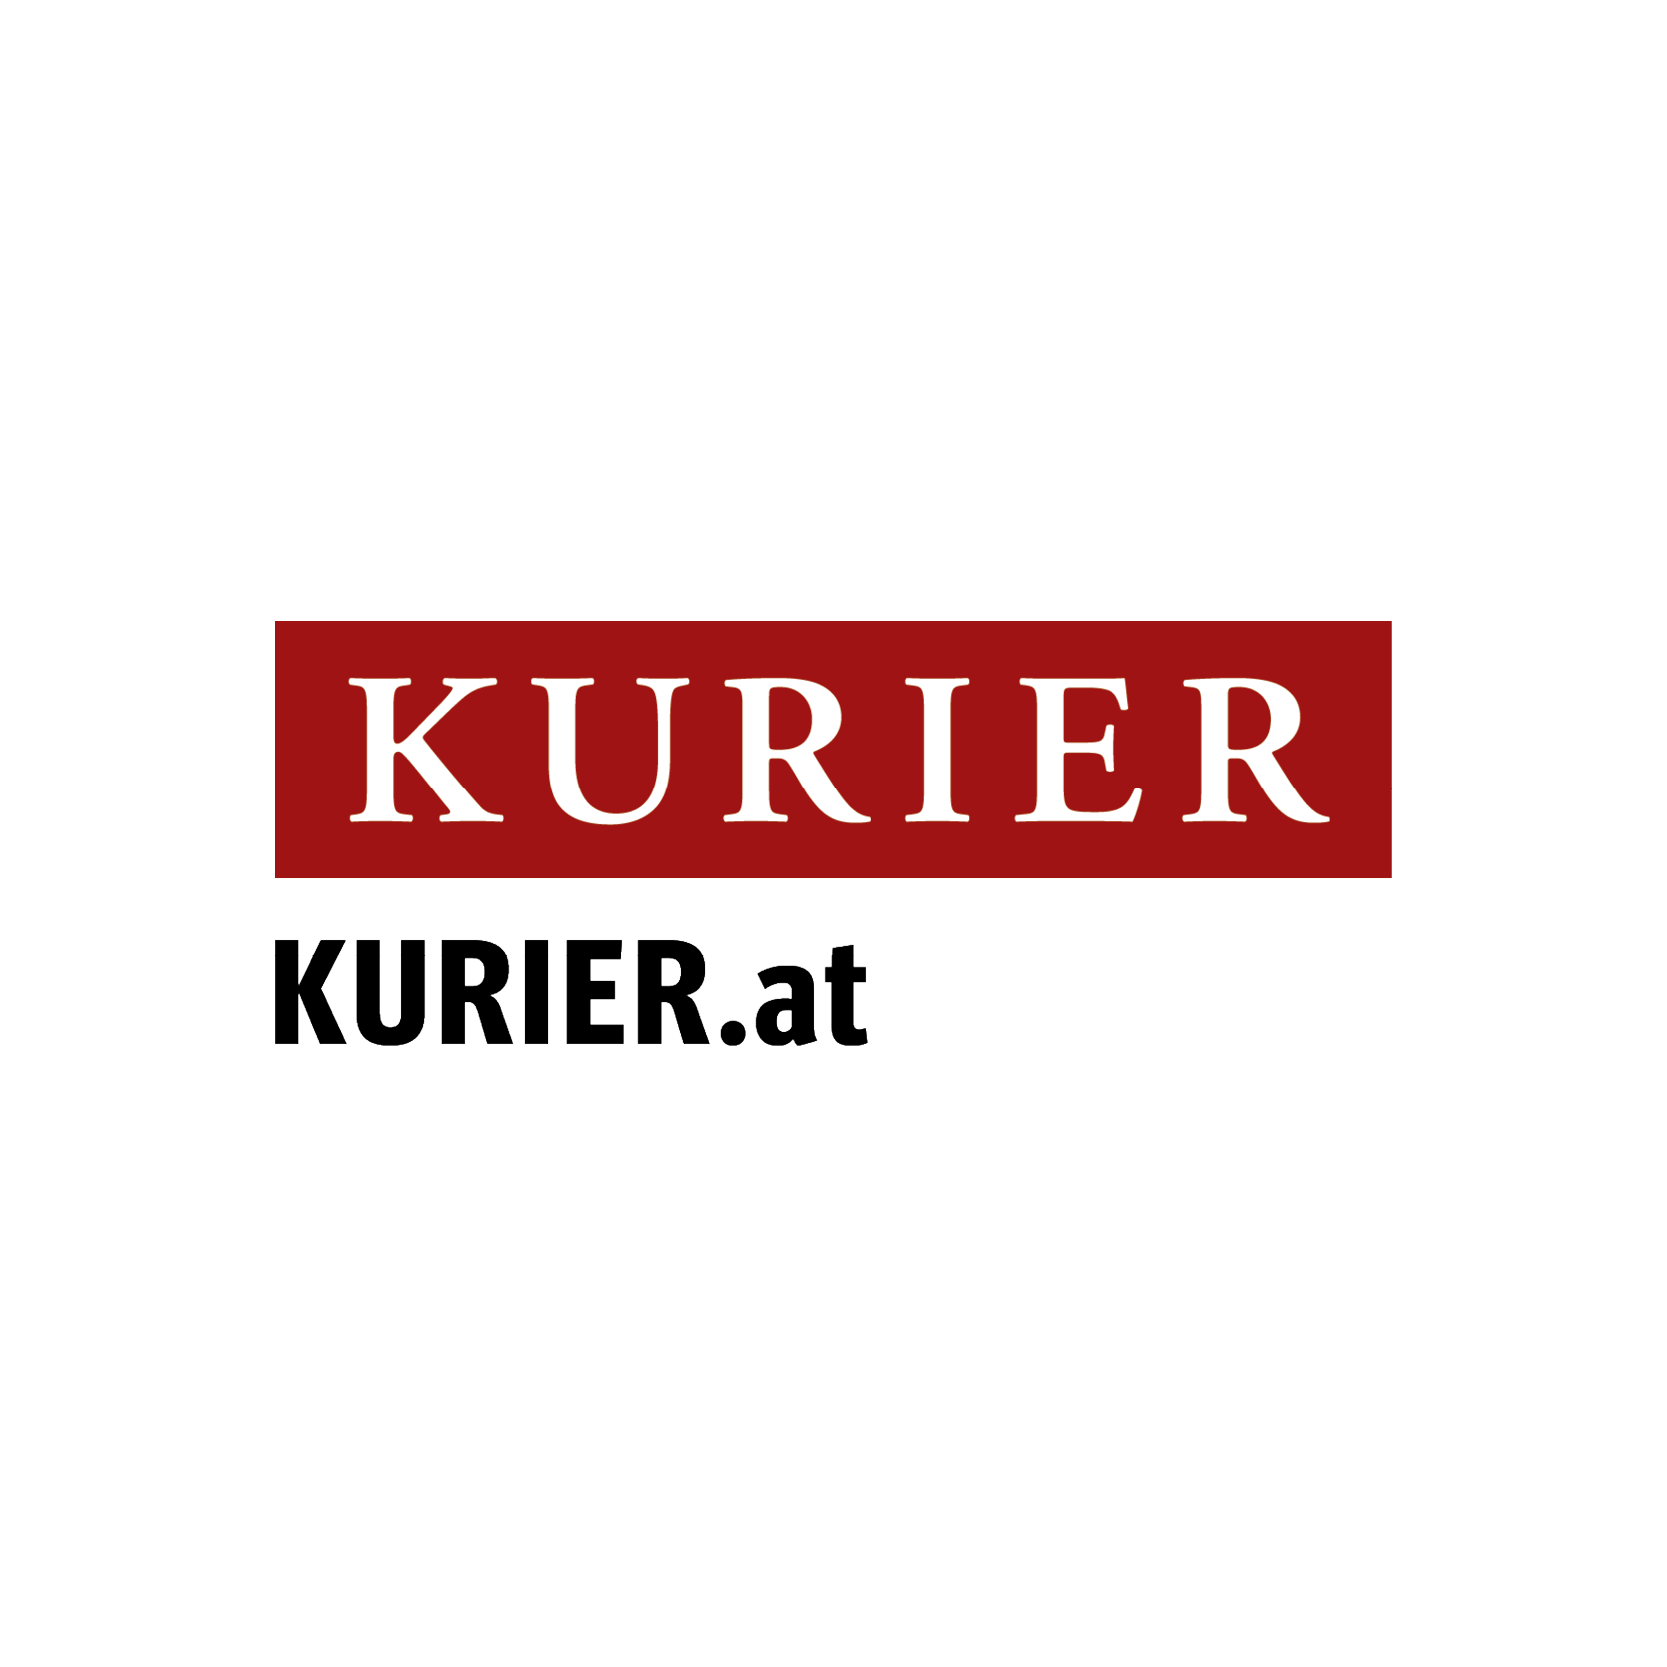 KURIER © Kurier